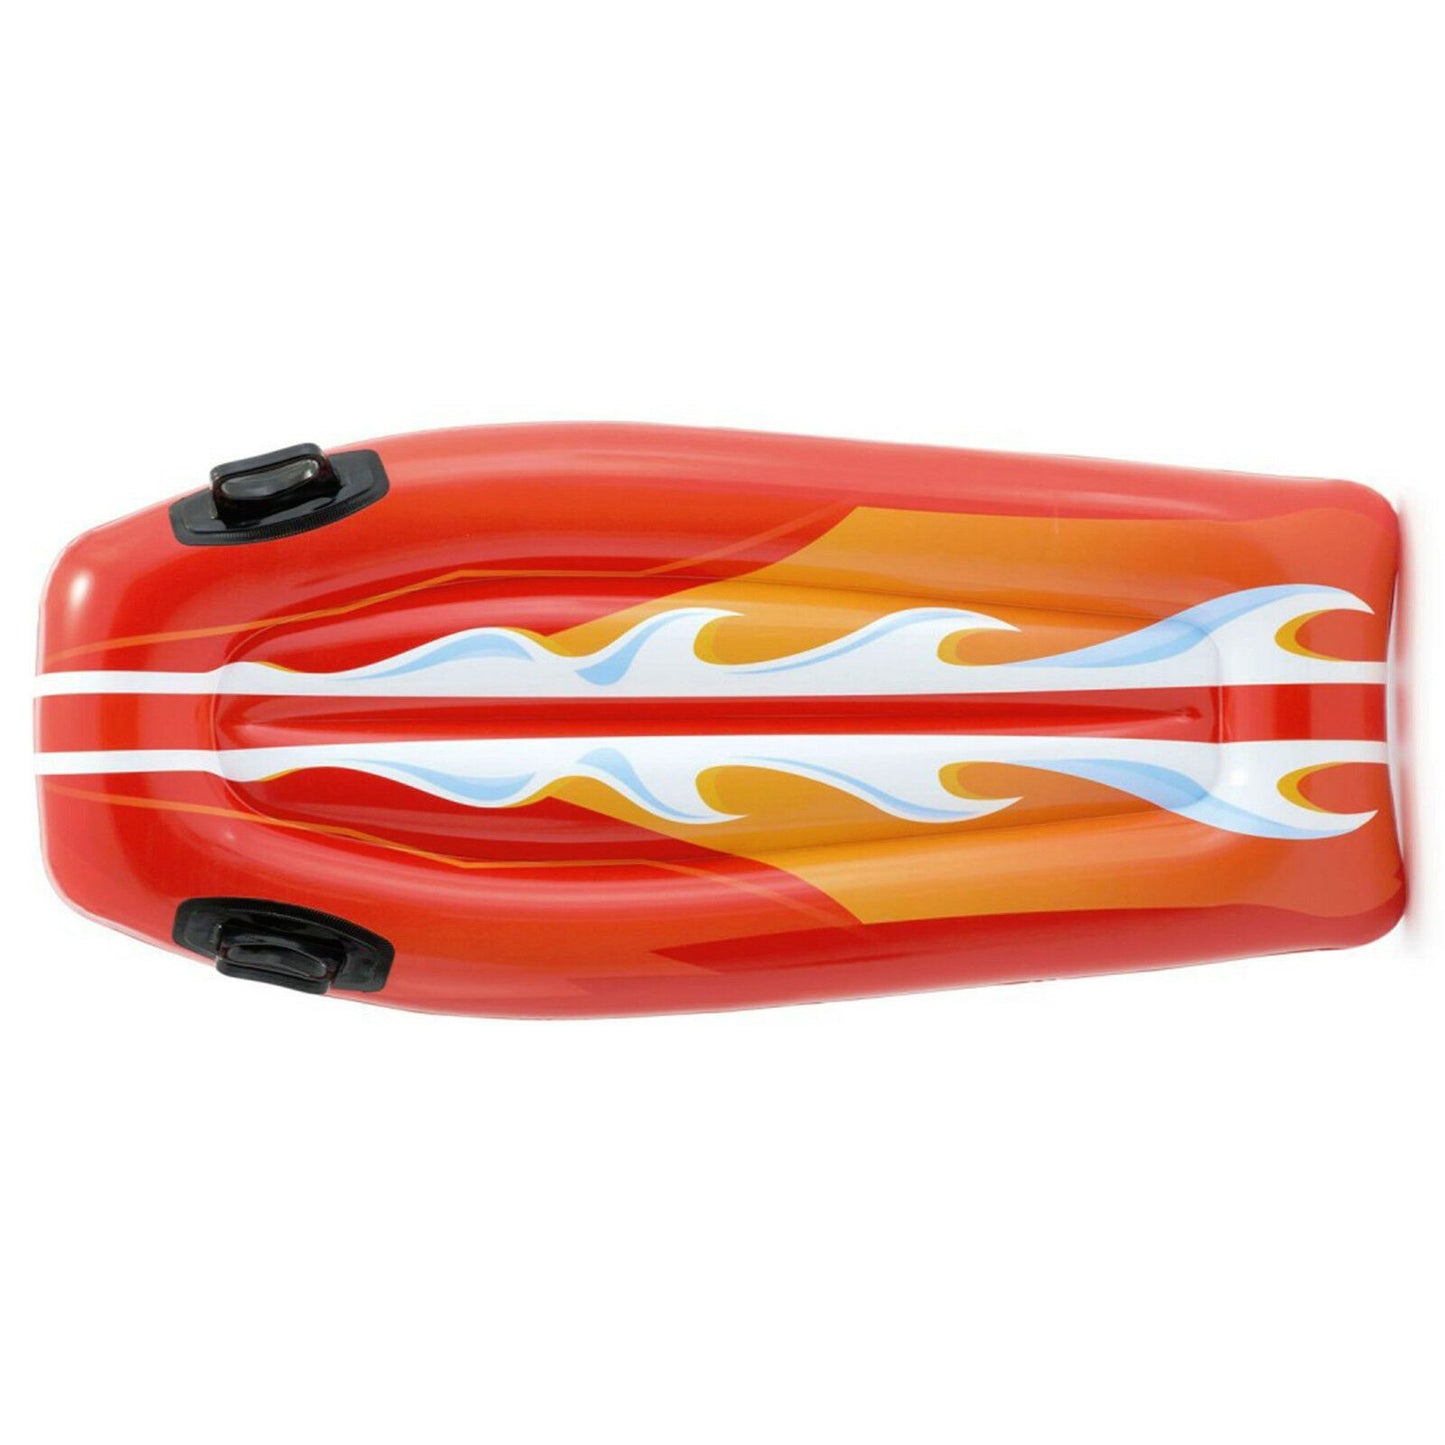 Intex Joy Riders Surf Beach Toy by Intex - UKBuyZone